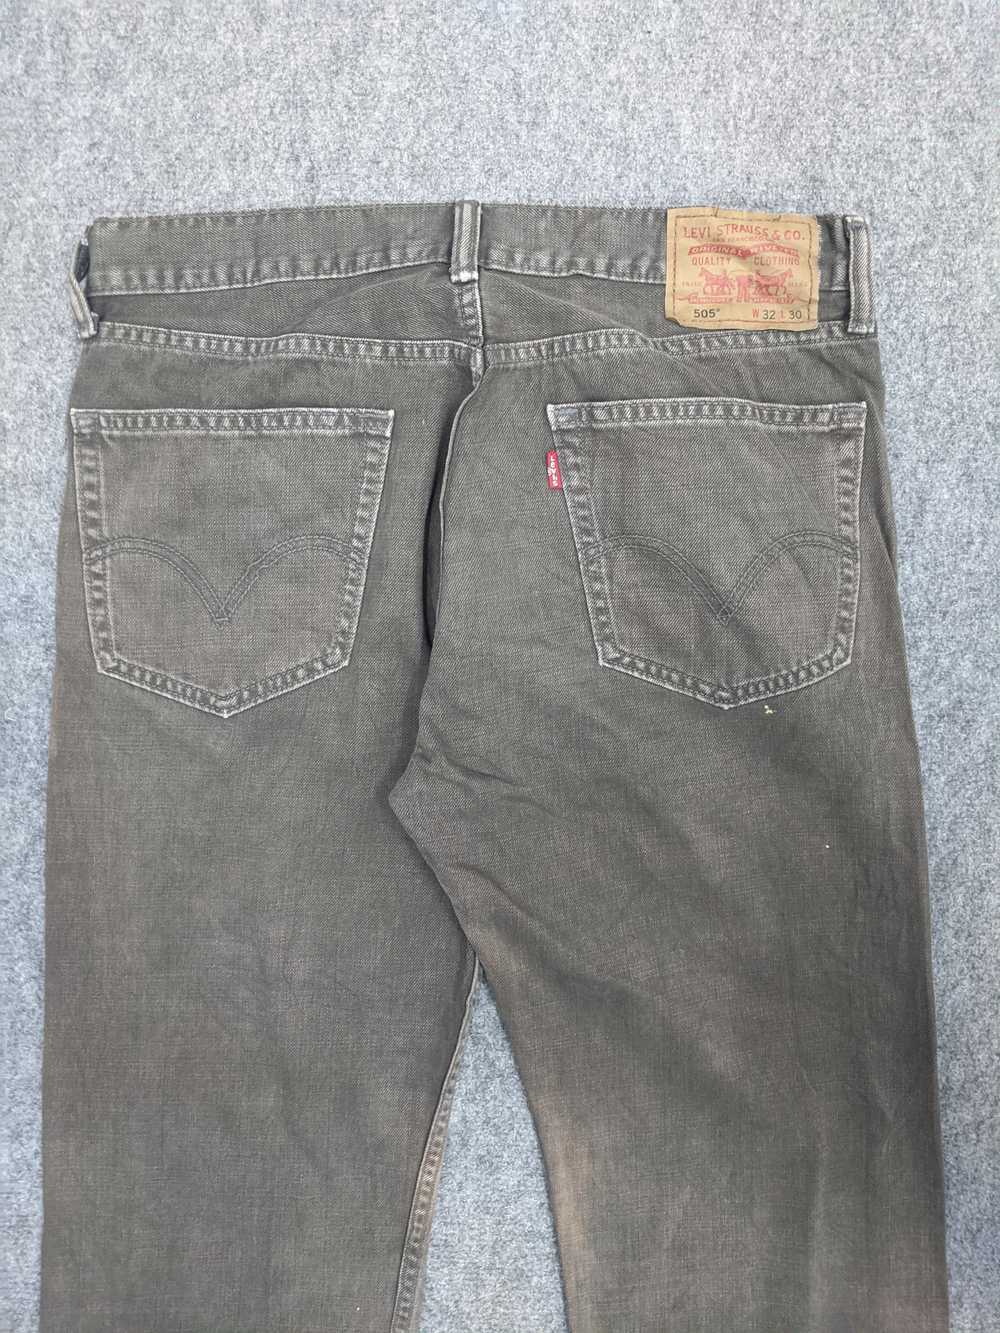 Vintage - Vintage Levis 505 Light Wash Jeans - image 4